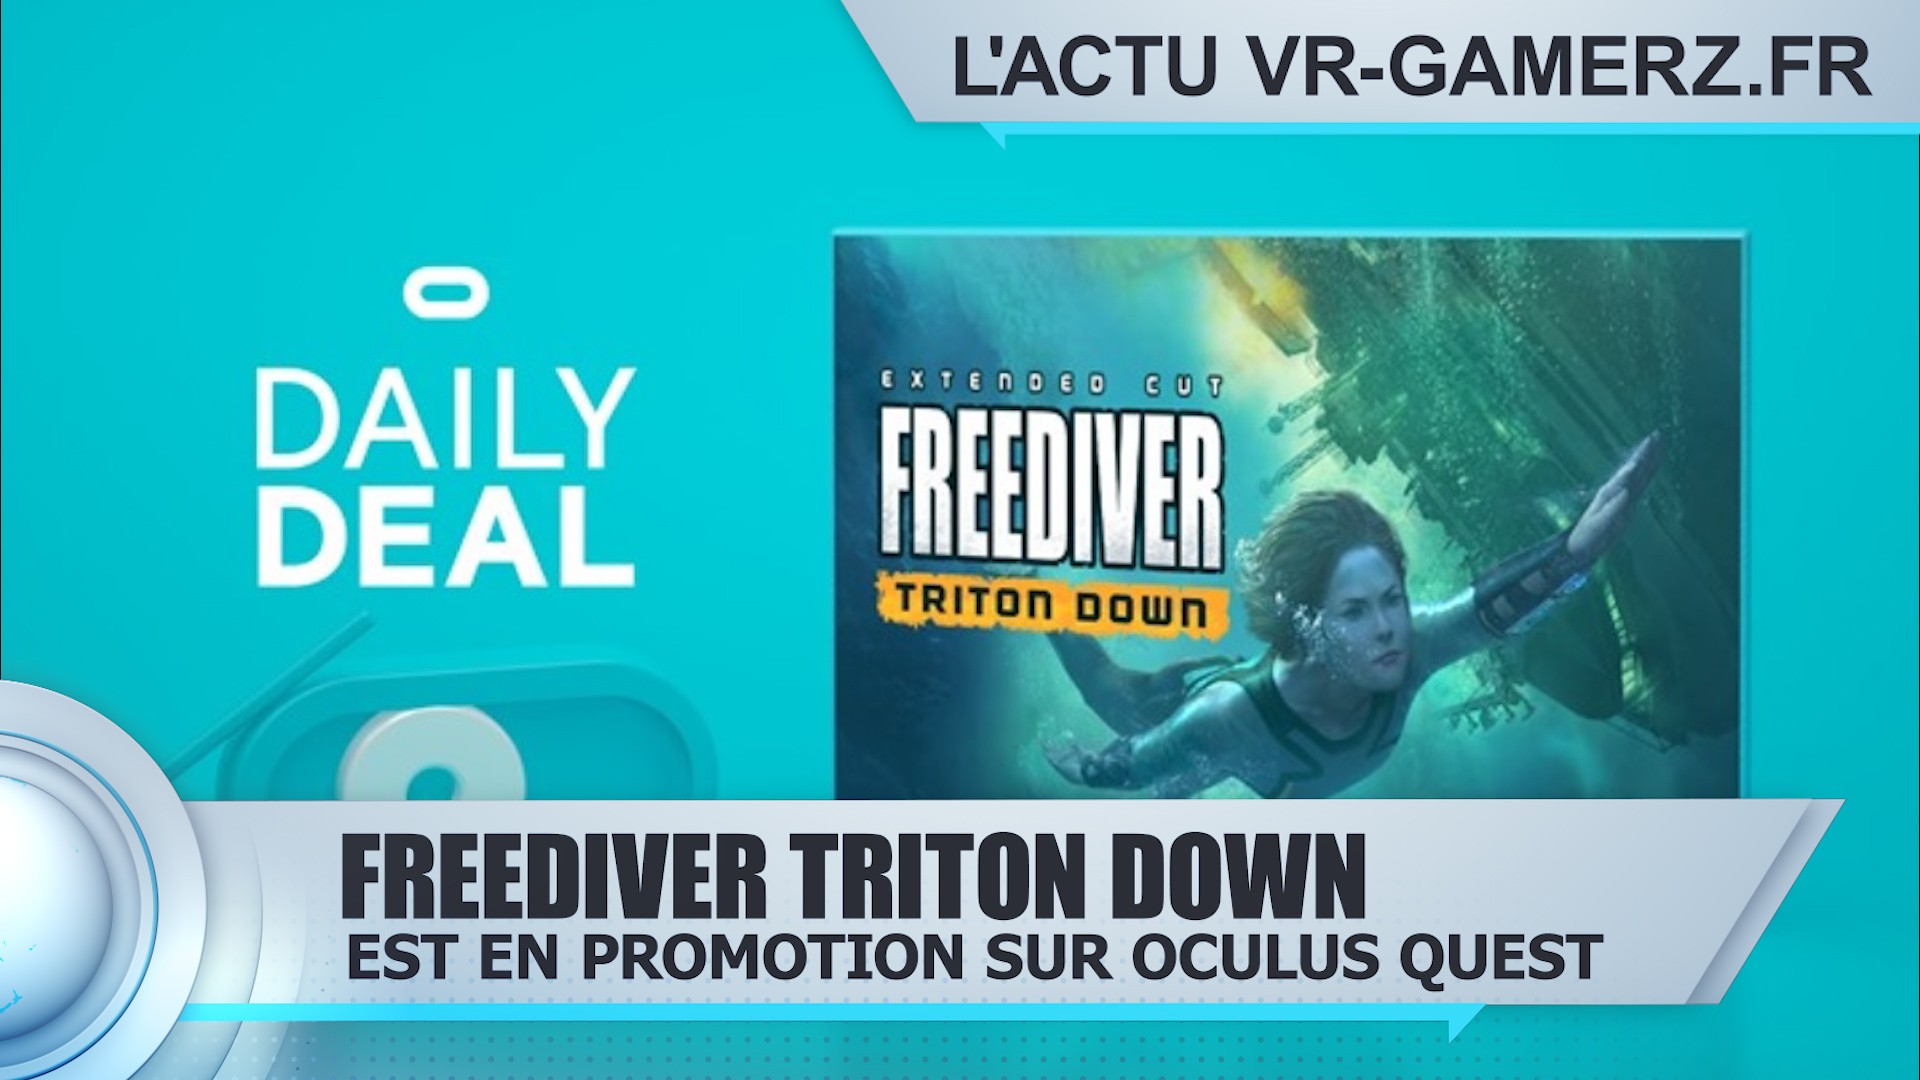 Freediver Triton down est en promotion sur Oculus quest !